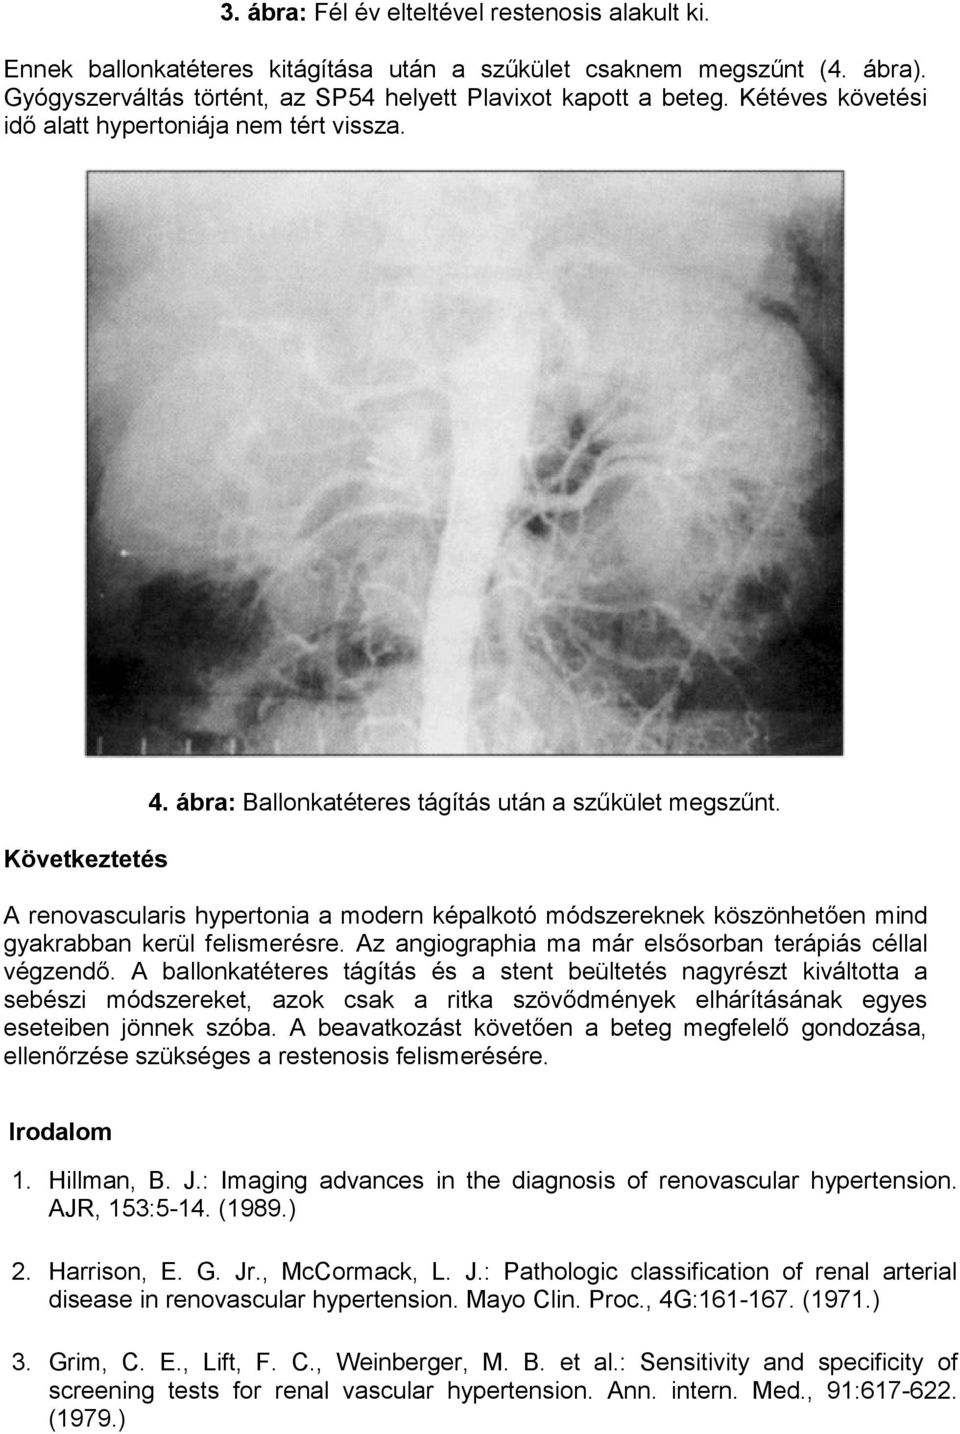 A renovascularis hypertonia a modern képalkotó módszereknek köszönhetően mind gyakrabban kerül felismerésre. Az angiographia ma már elsősorban terápiás céllal végzendő.